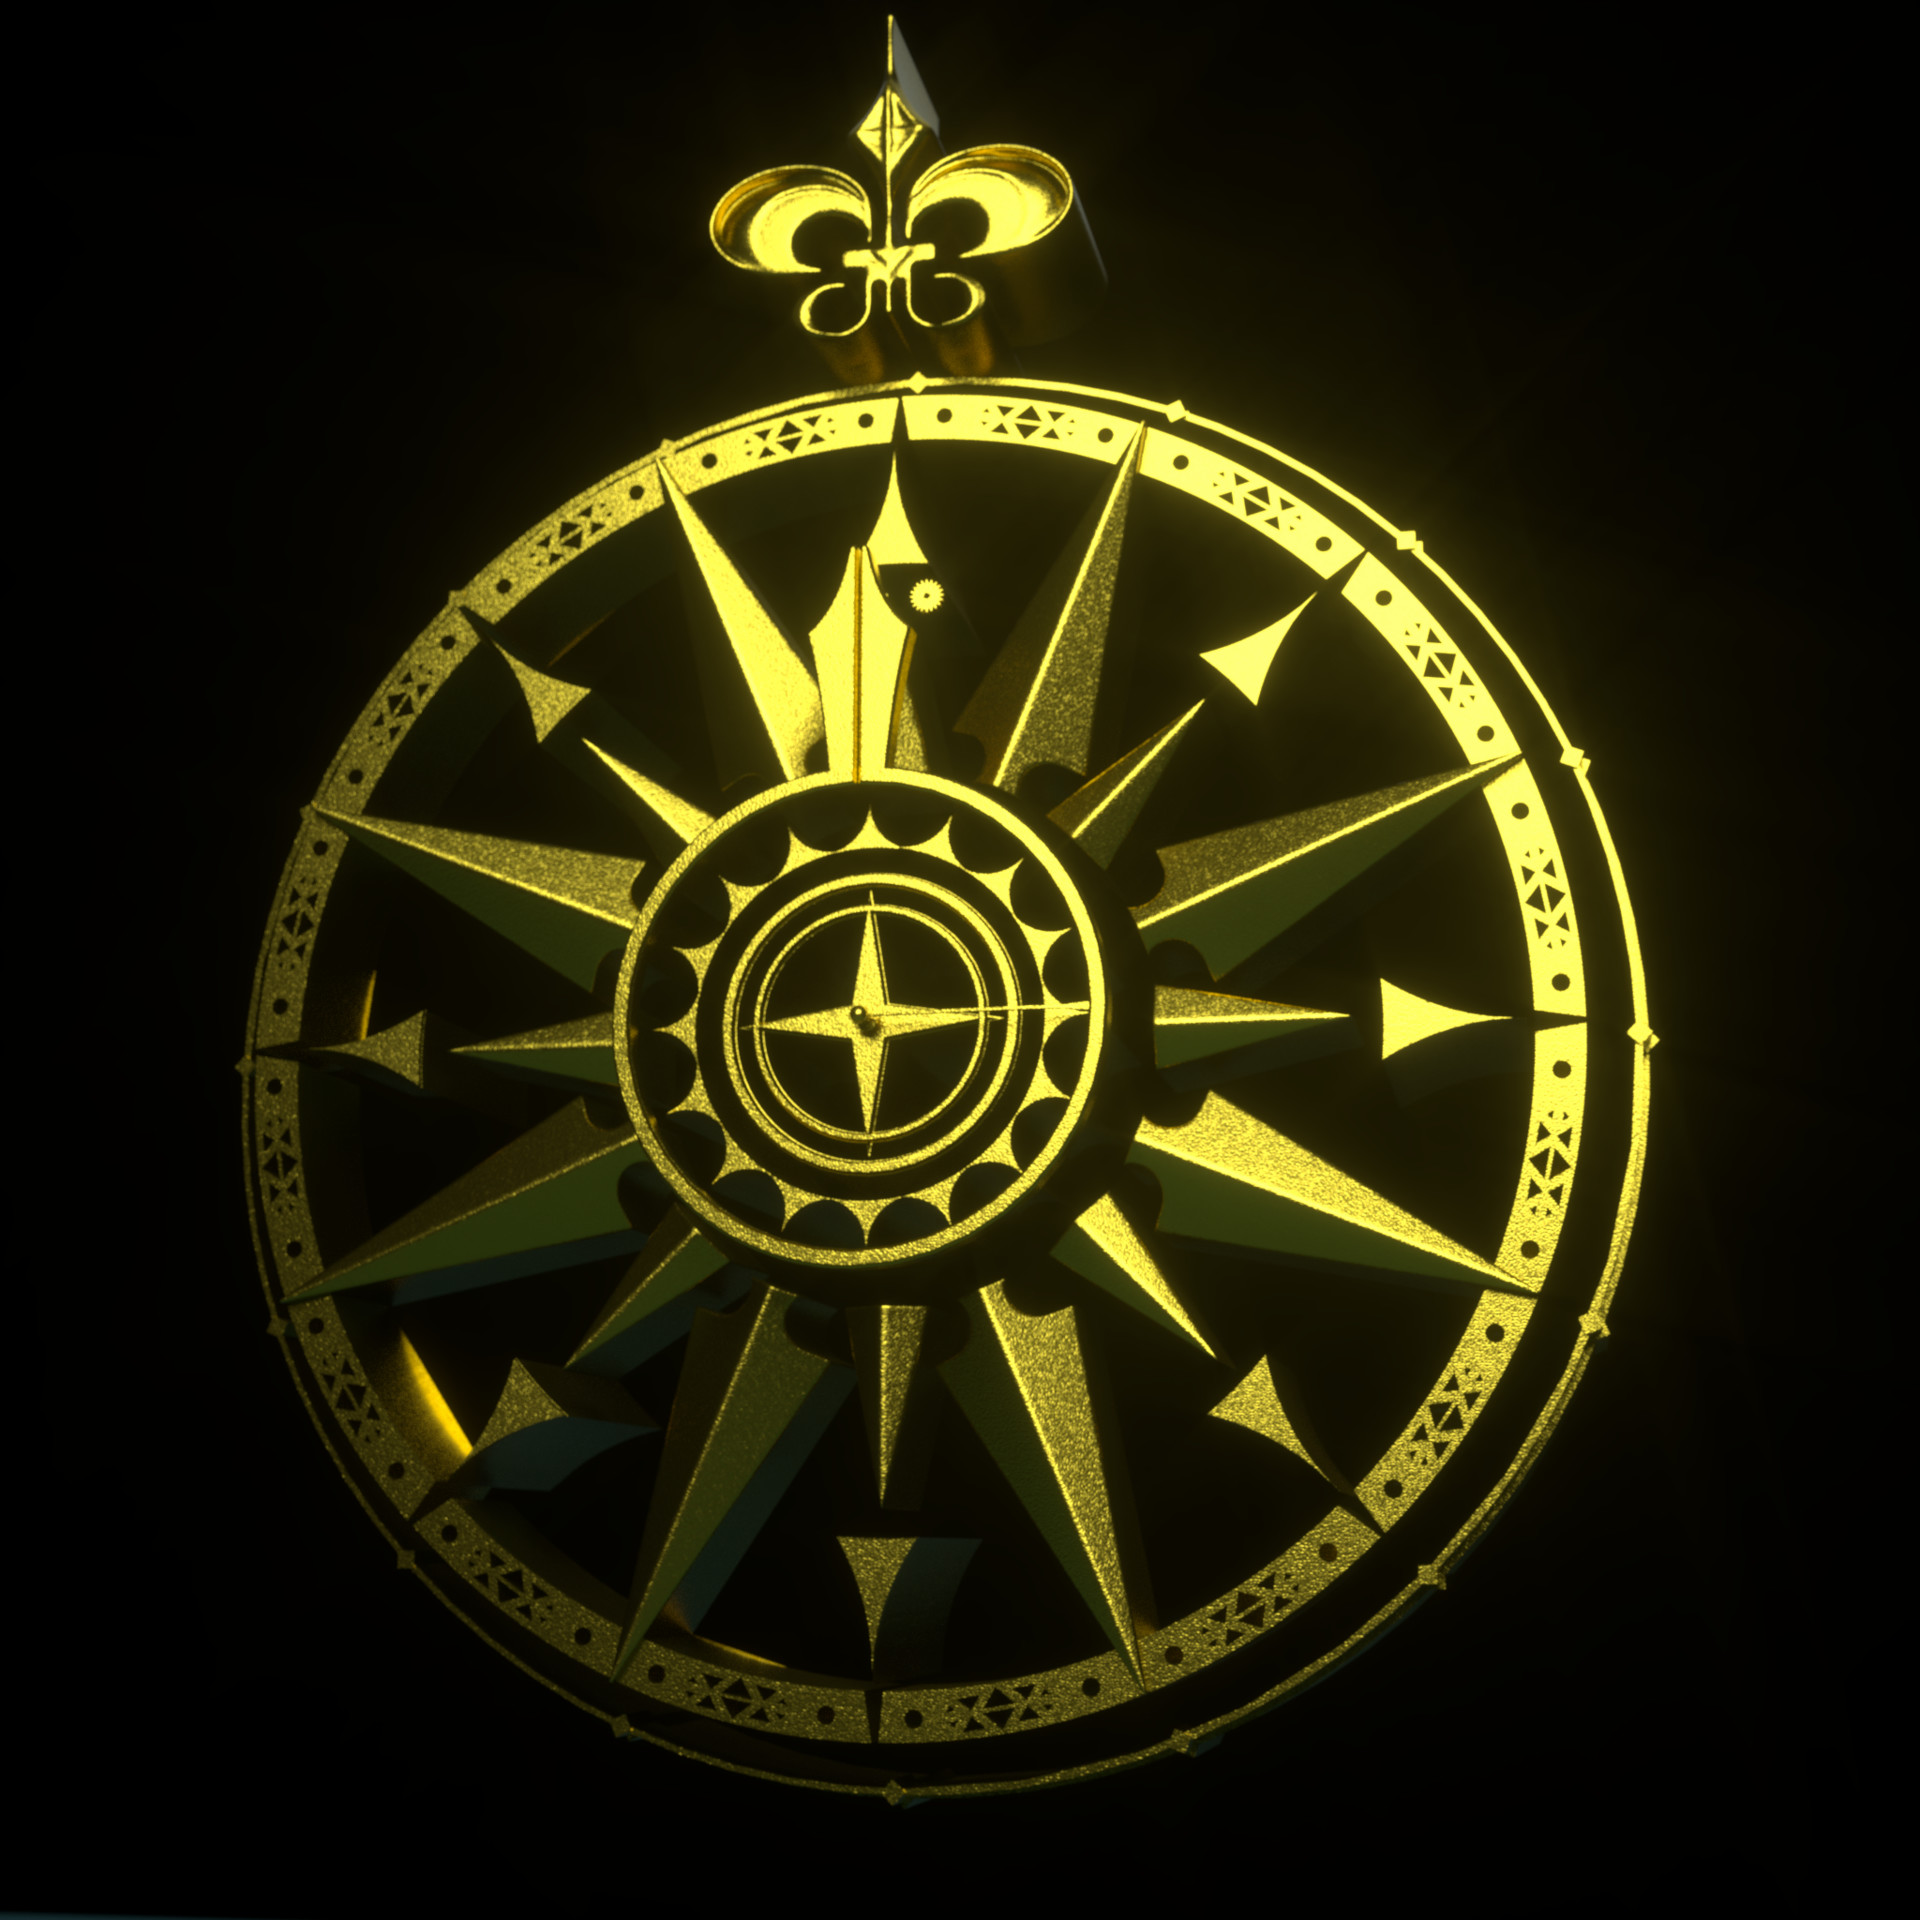 Eric Keller - Compass models for the Aquaman titles